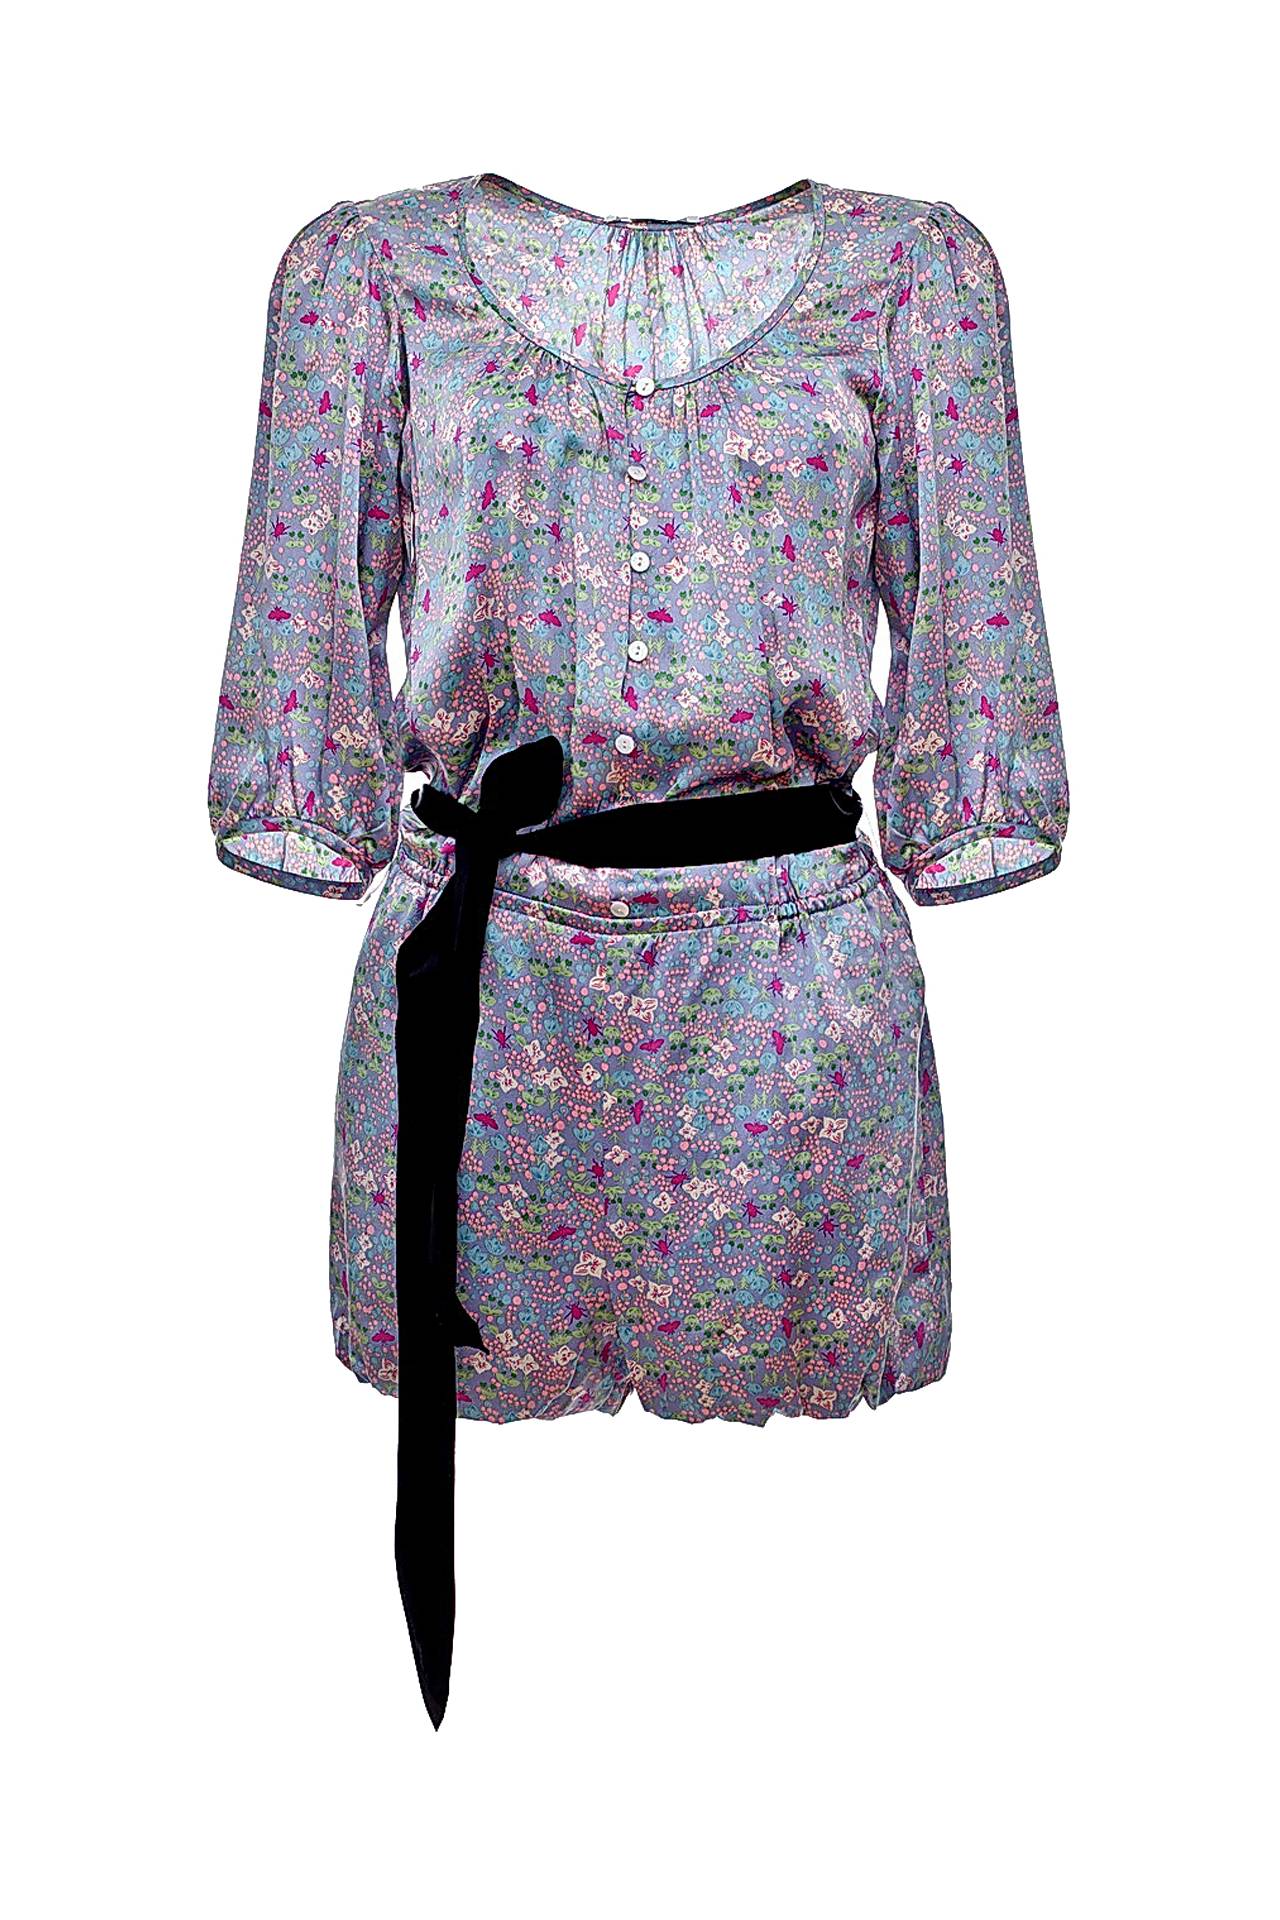 Одежда женская Комбинезон TIBI (2191190/10.2). Купить за 15920 руб.